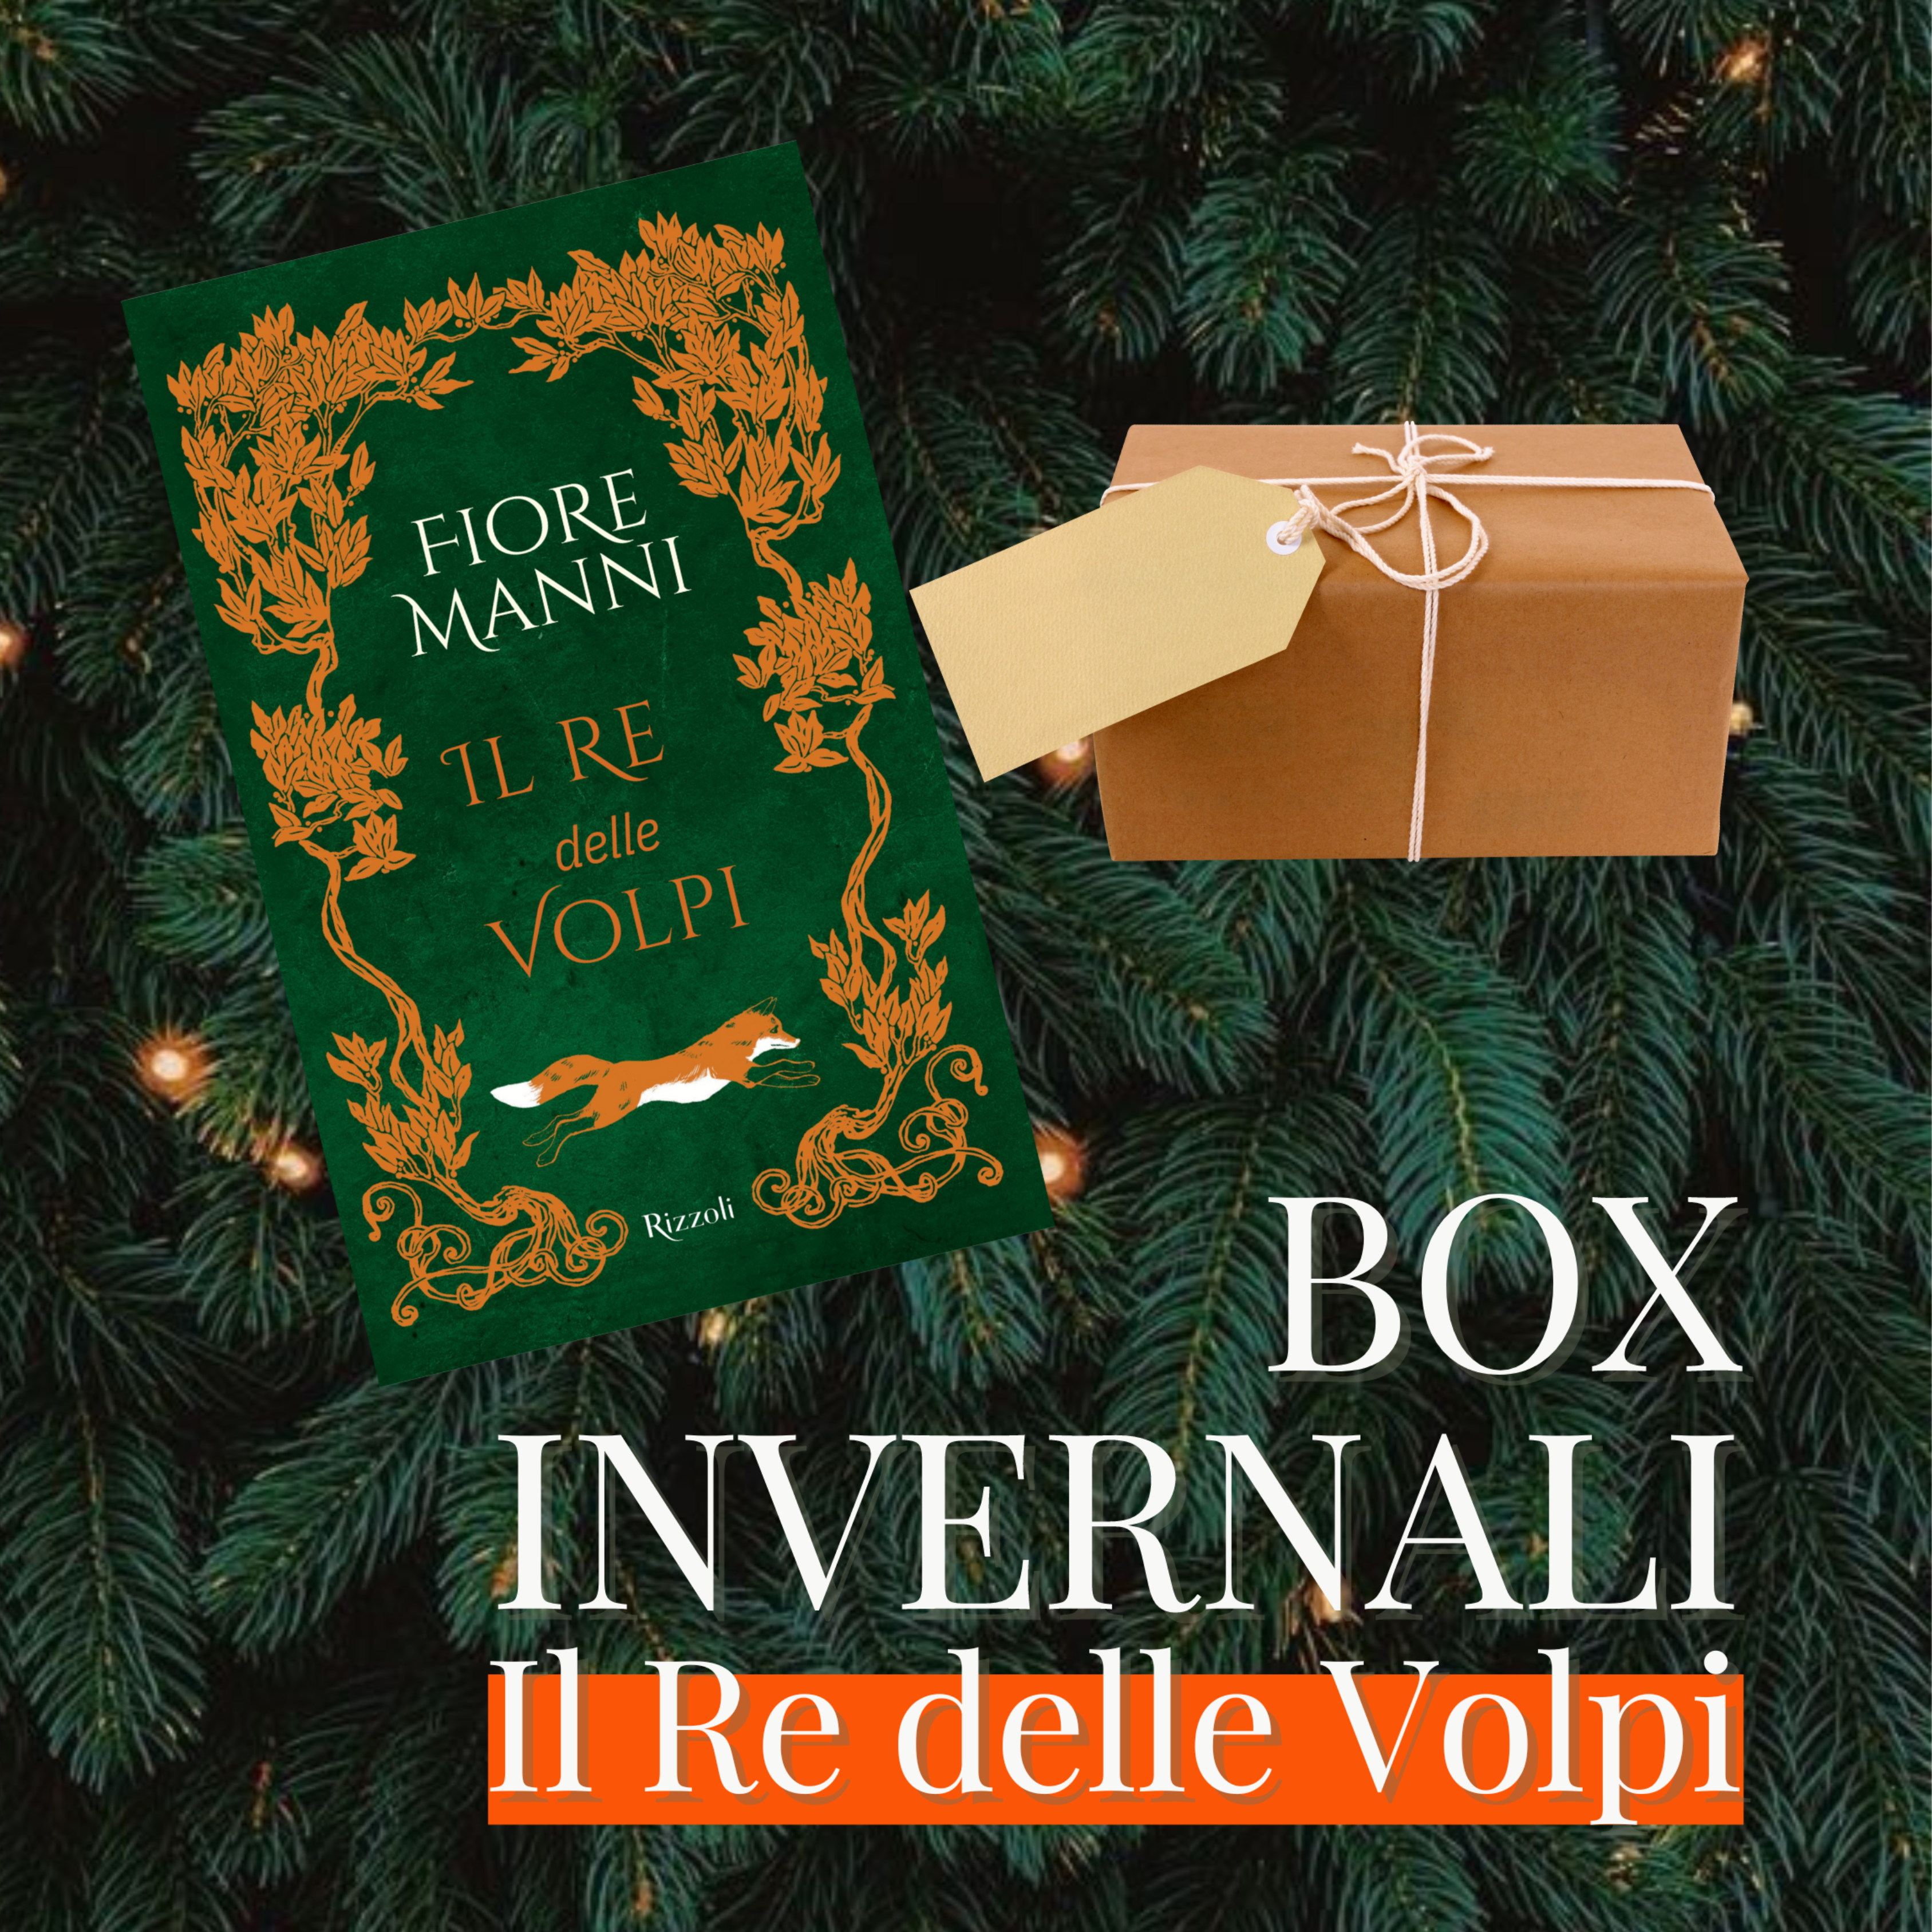 Speciale Box Invernale - Fiore Manni x Komorebi (spedizioni dal 20